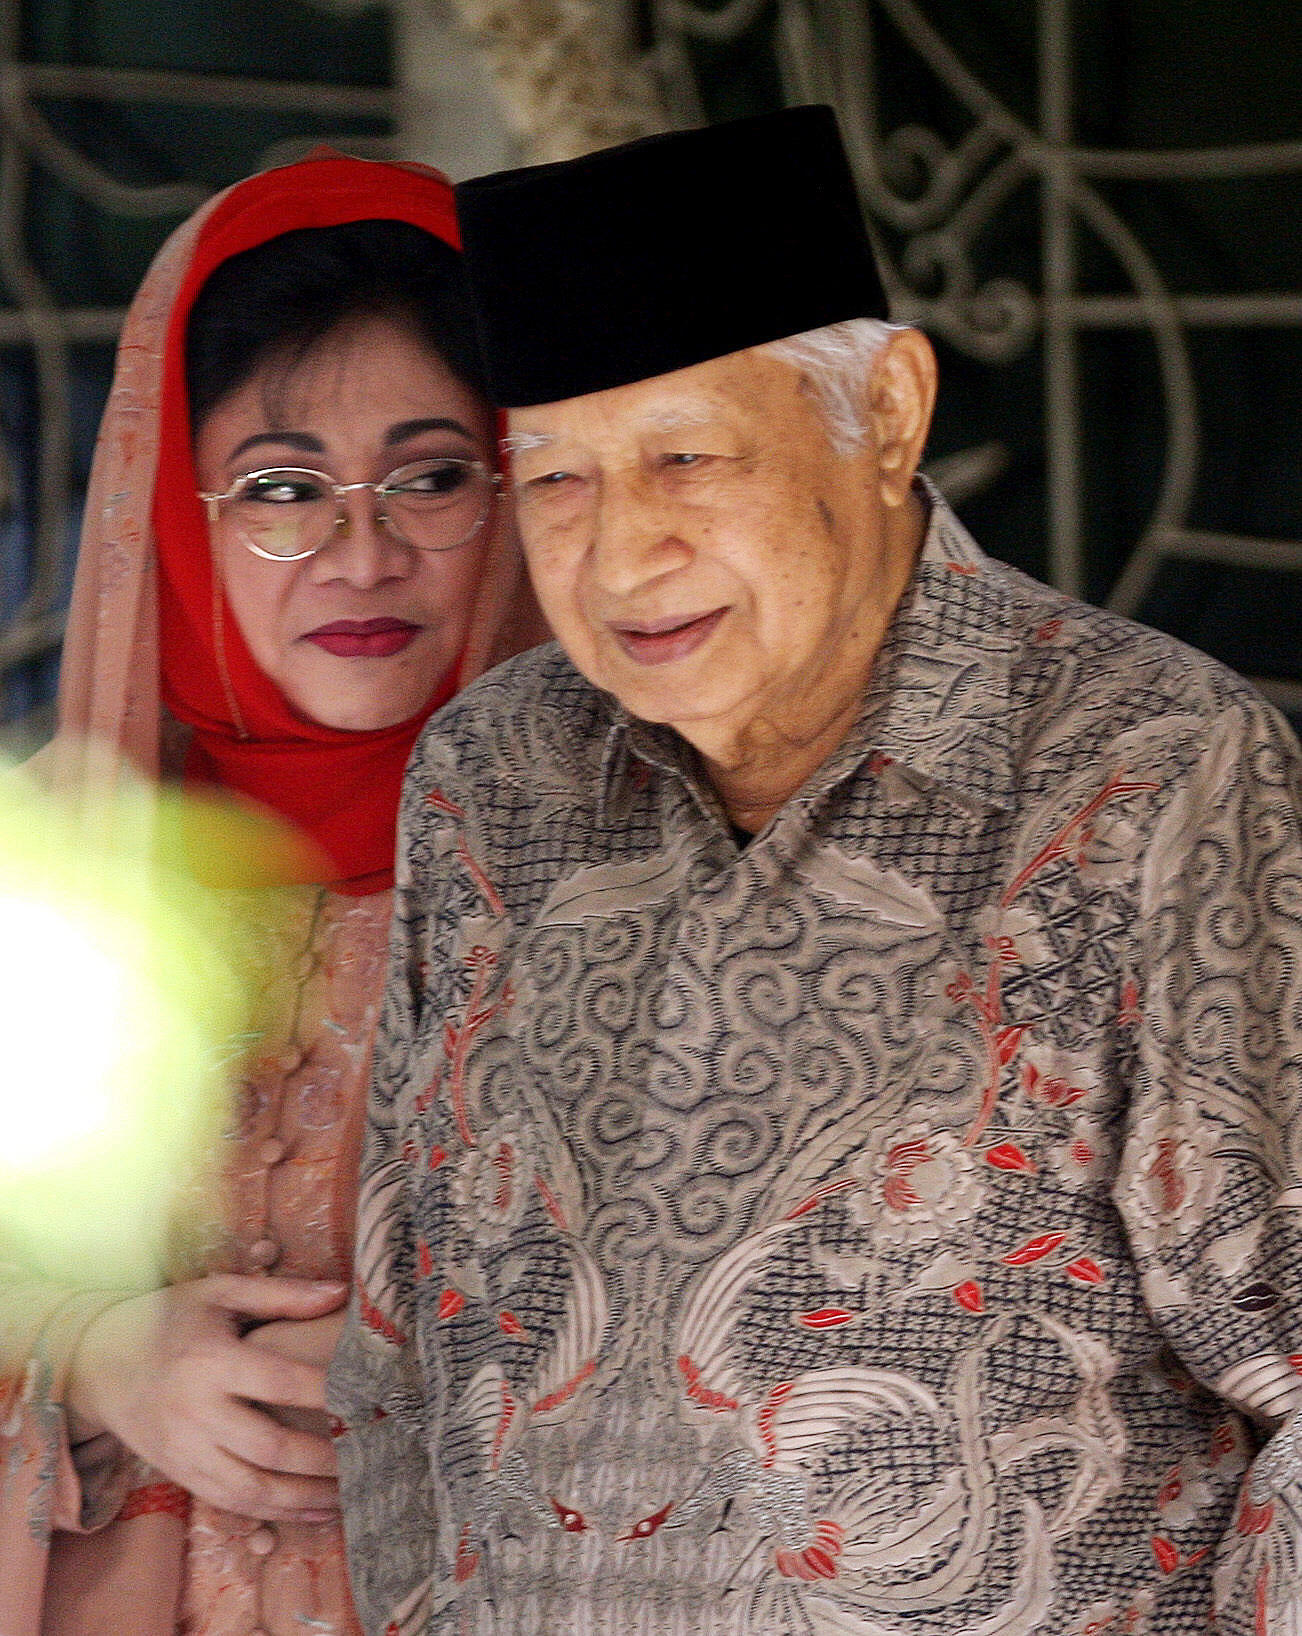 Suharto